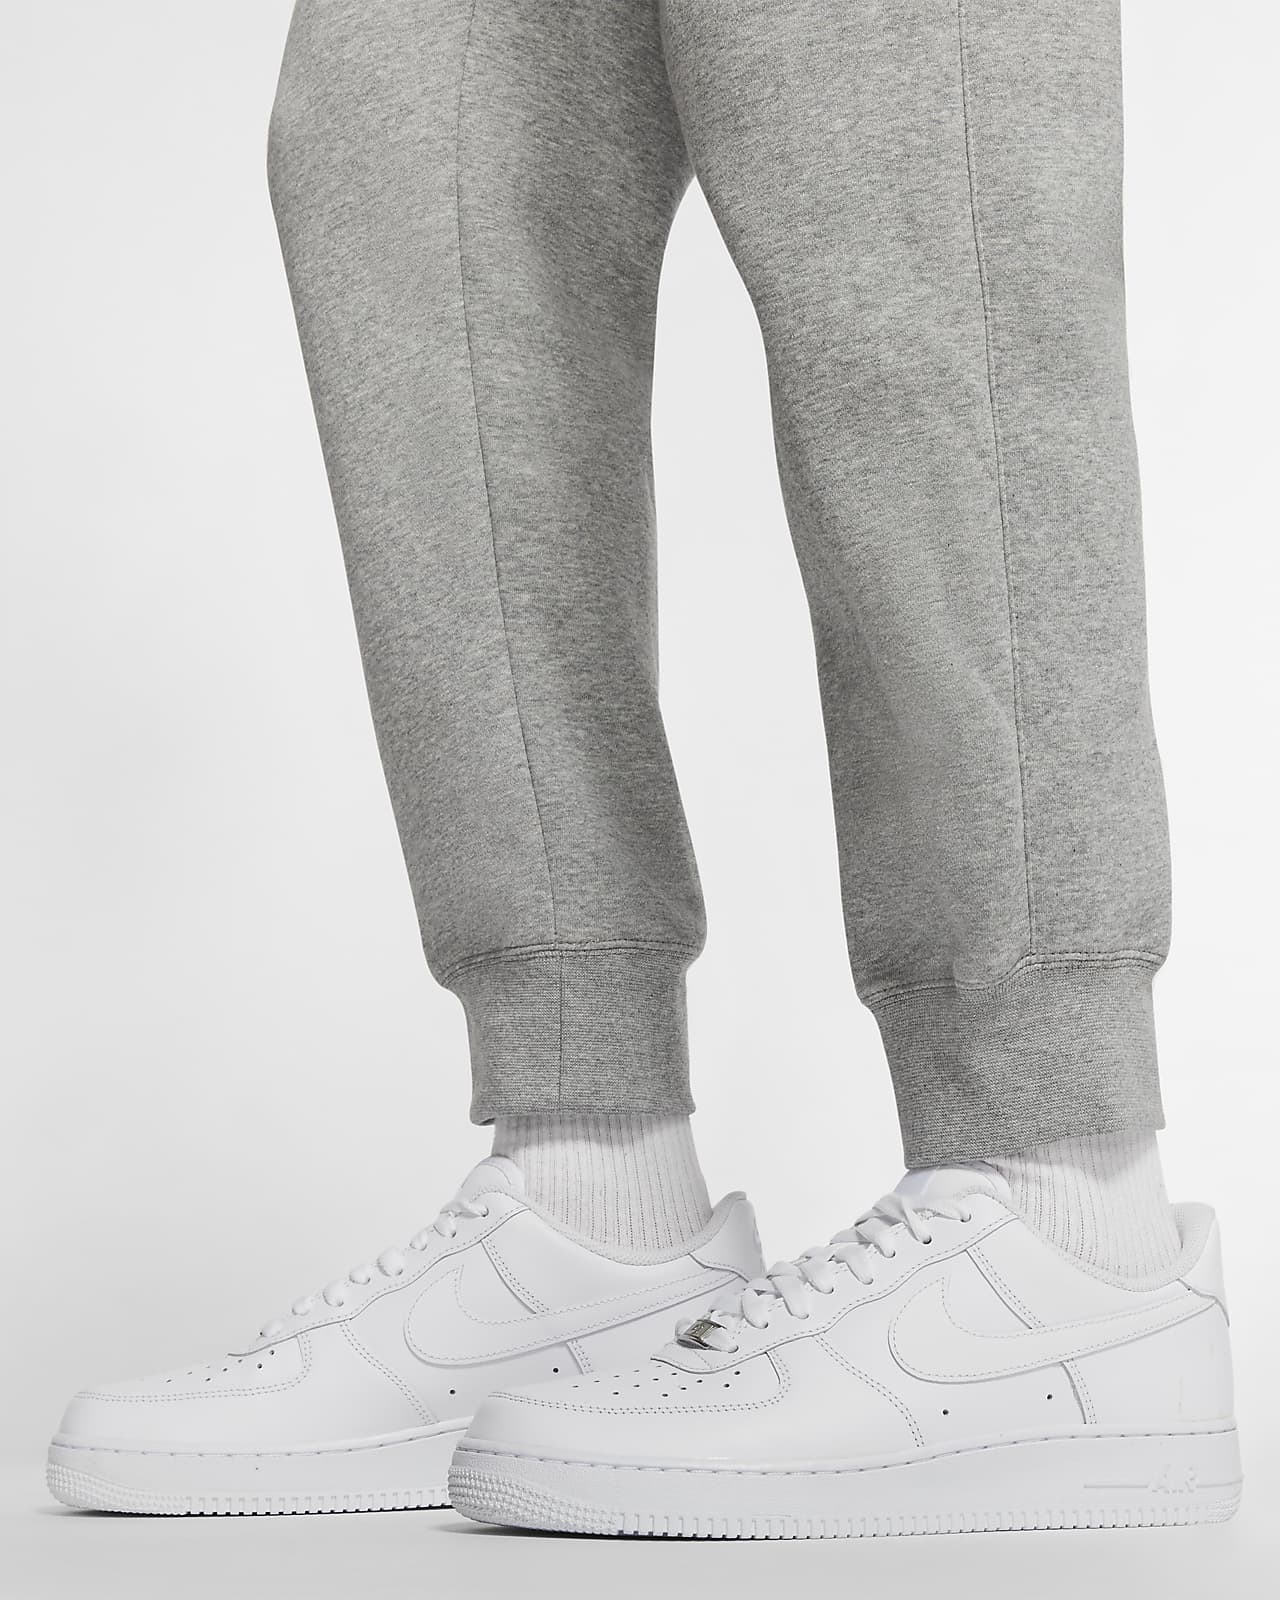 Nike NSW Club Fleece Cargo Pants